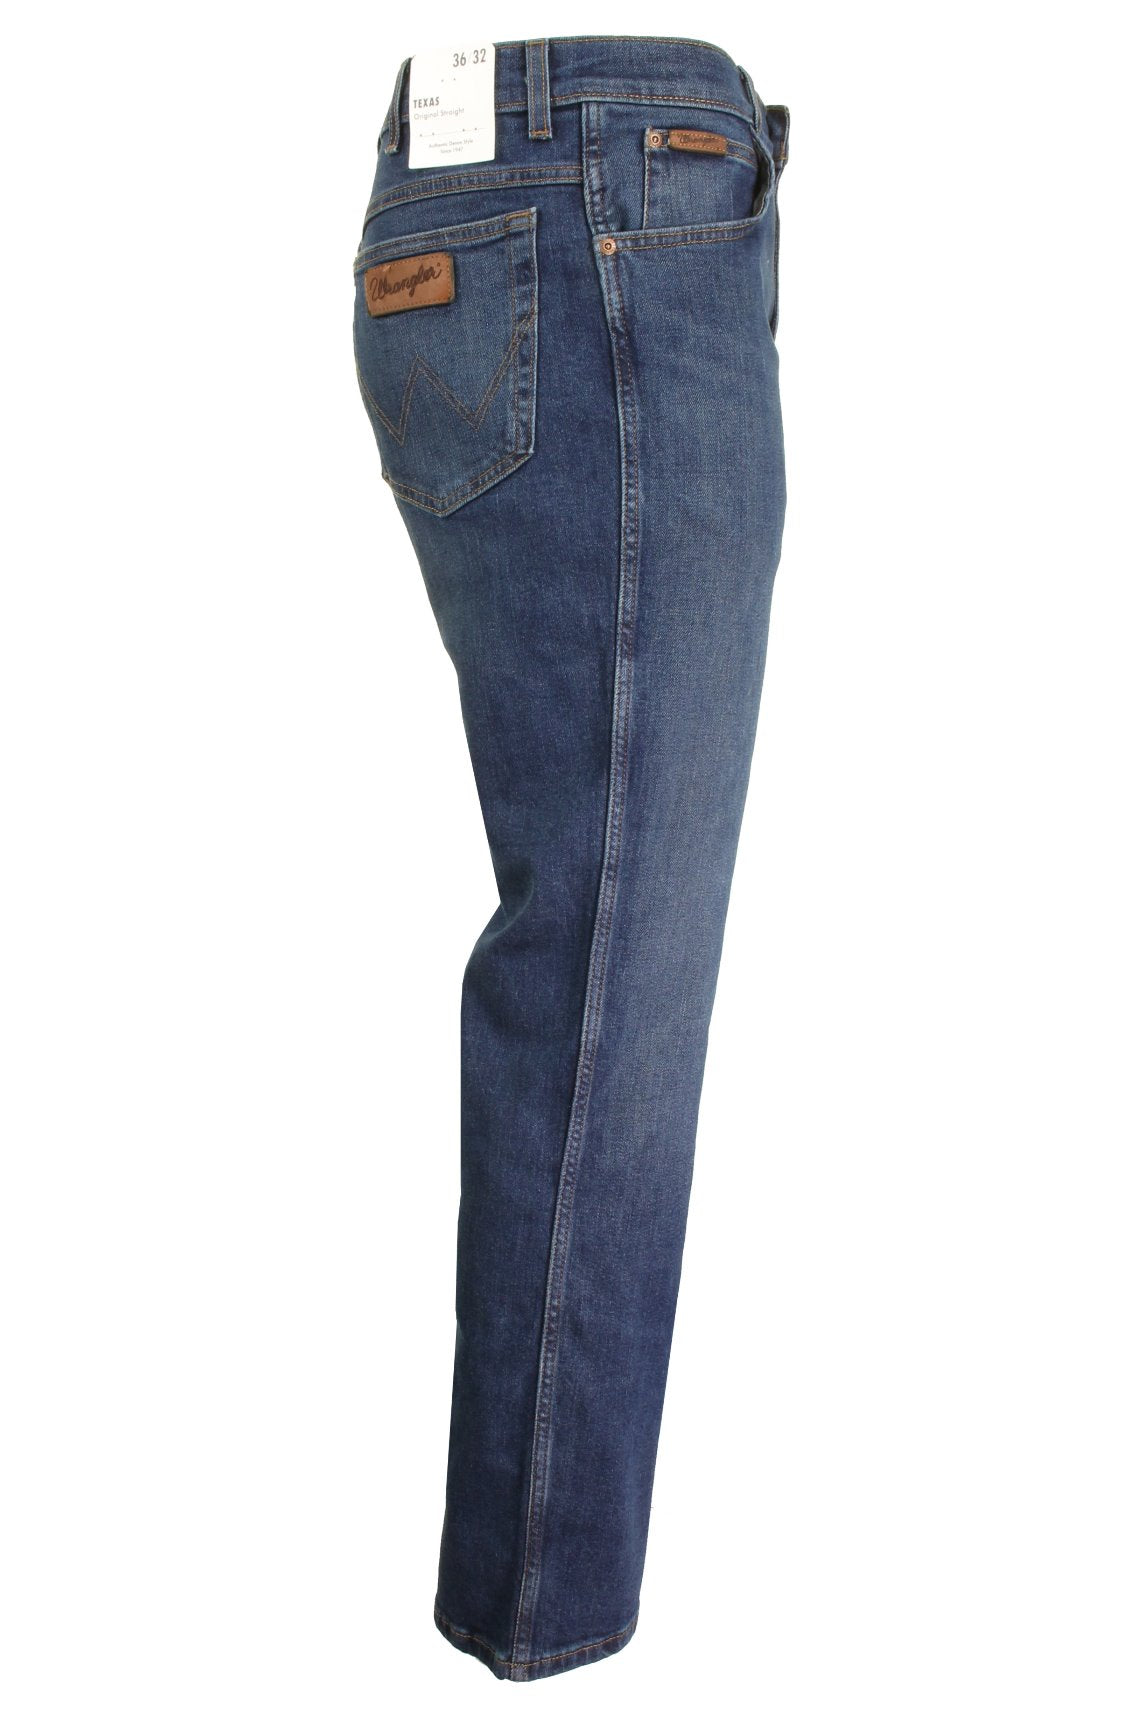 Mens Wrangler 'Texas' Jeans - Denim Stretch - Original Straight Fit, 02, W121-Core, Indigo Wit